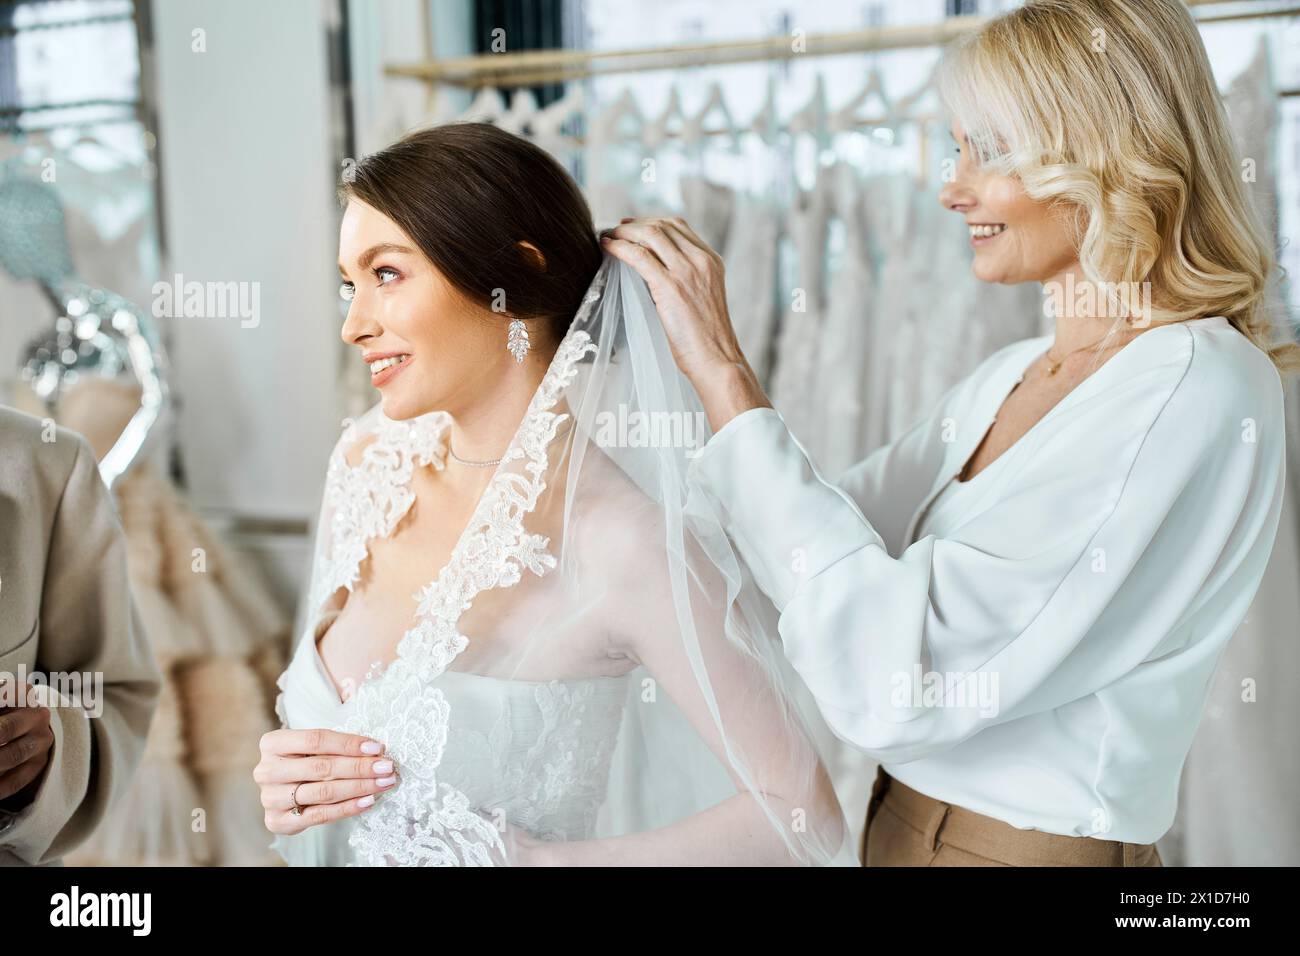 Die junge Braut in einem weißen Kleid und die andere ihre Mutter stehen neben einem Kleiderständer in einem Brautsalon. Stockfoto